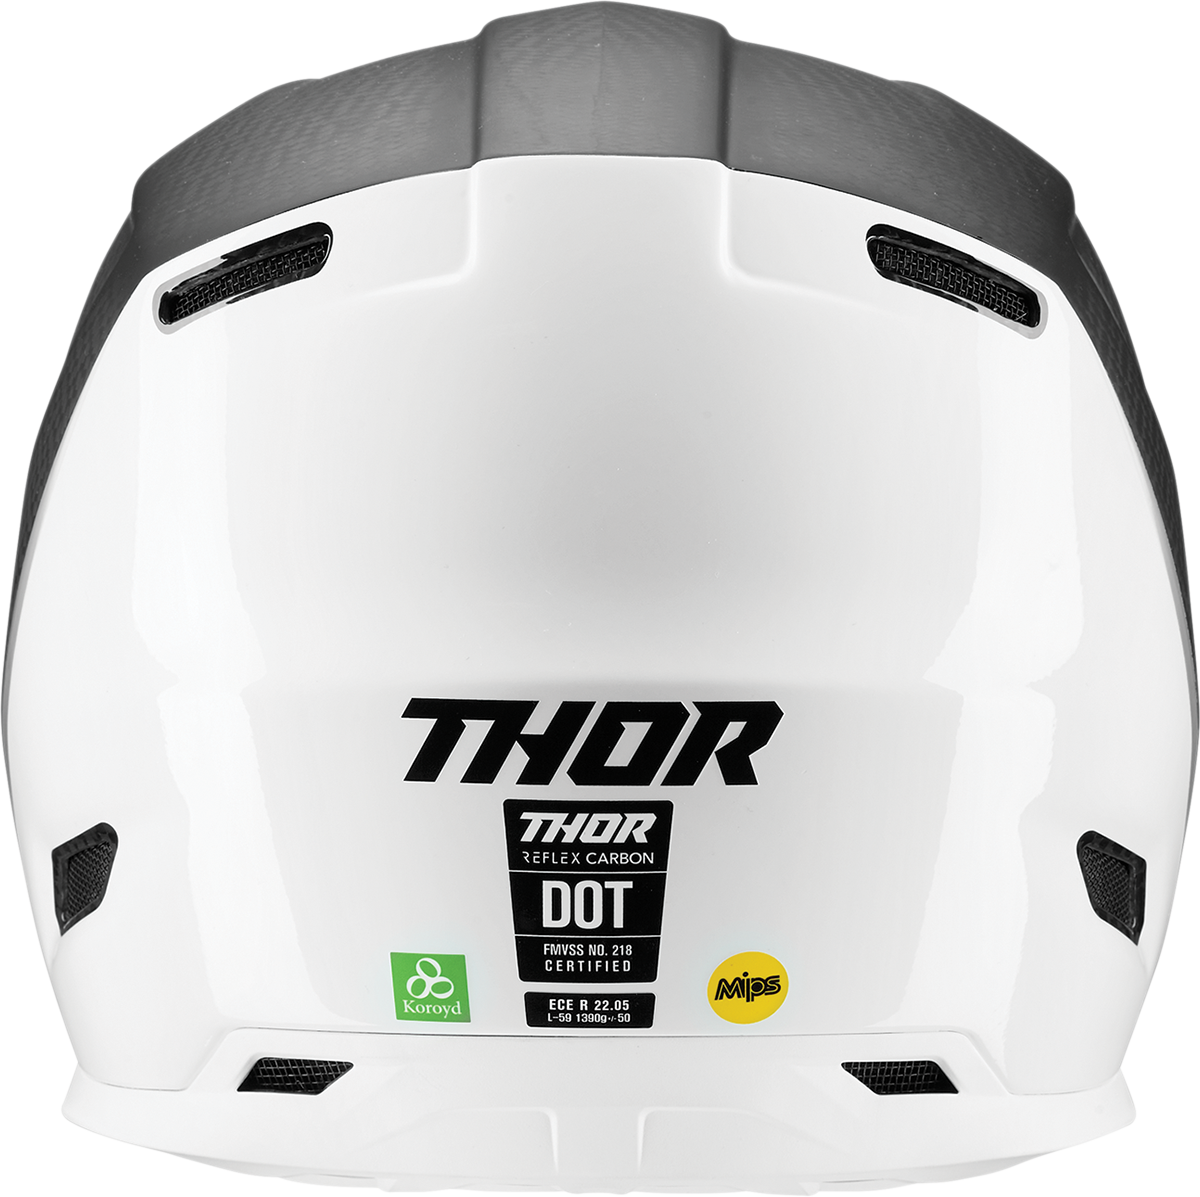 THOR Reflex Helmet - Polar - Carbon/White - MIPS? - Small 0110-7814